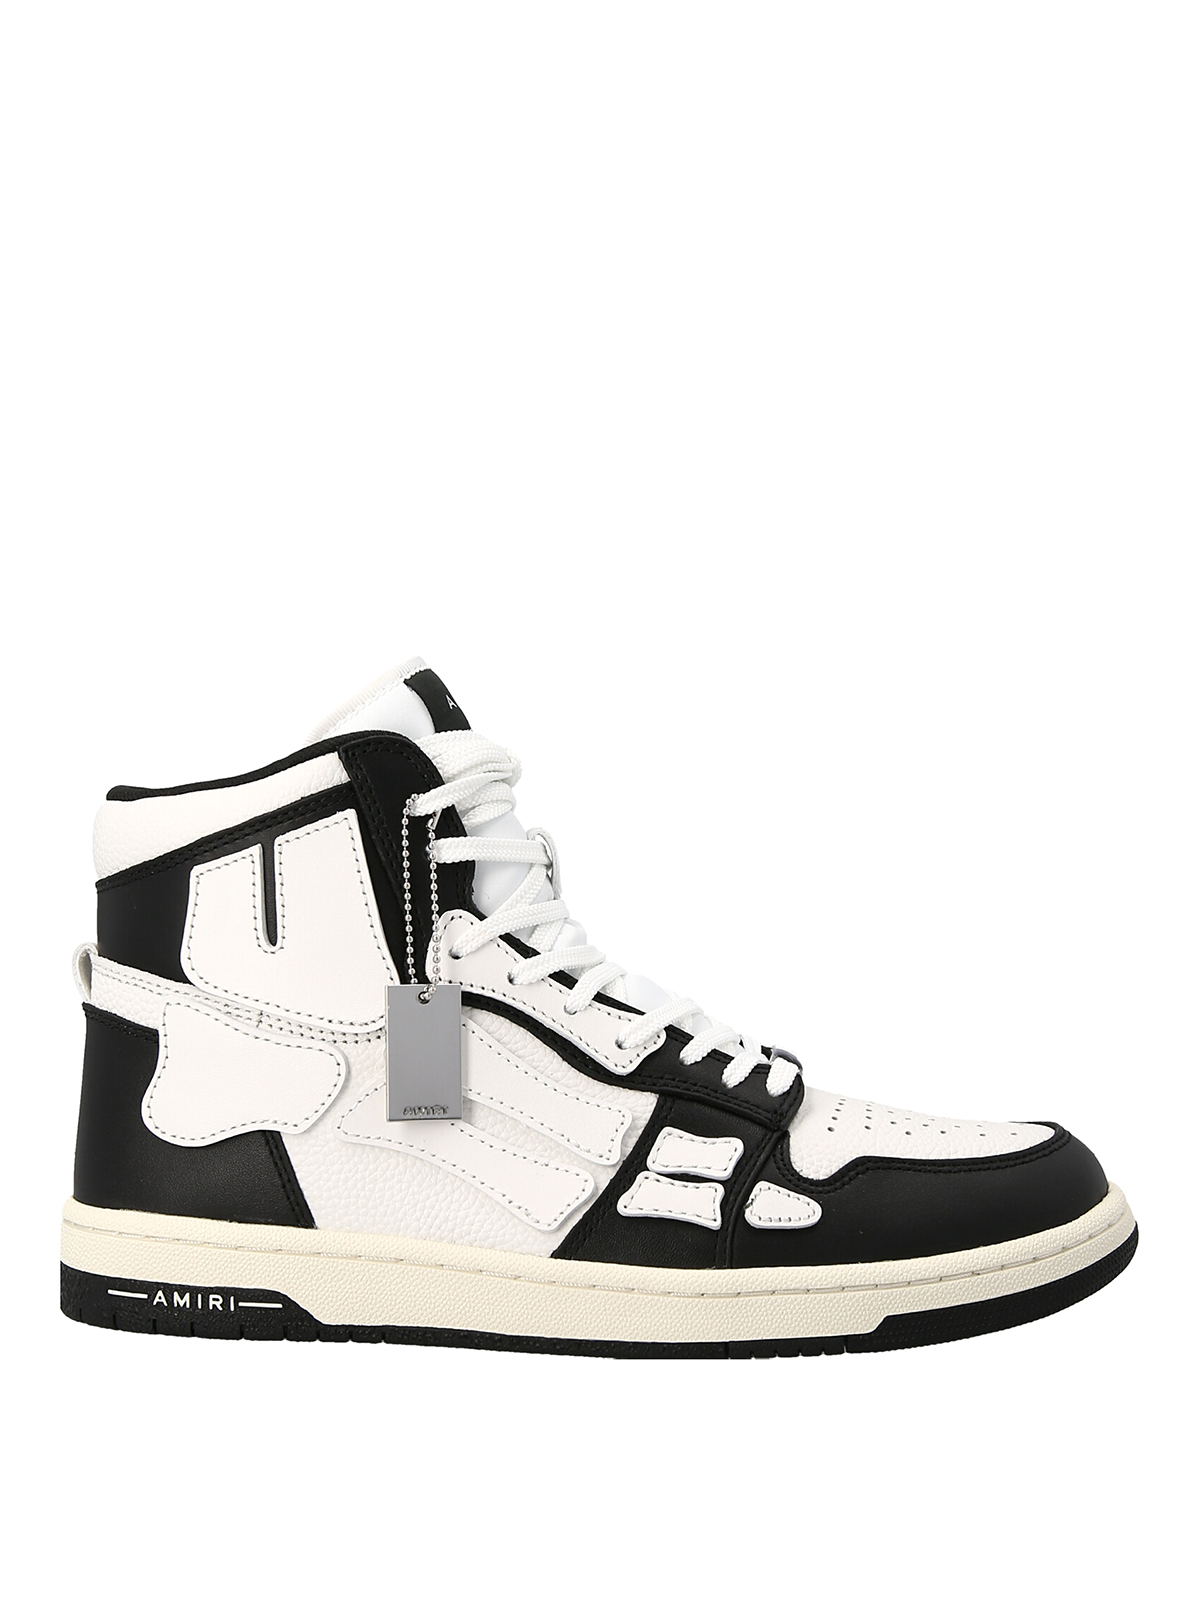 Amiri Skel Top Hi Sneakers In Blanco